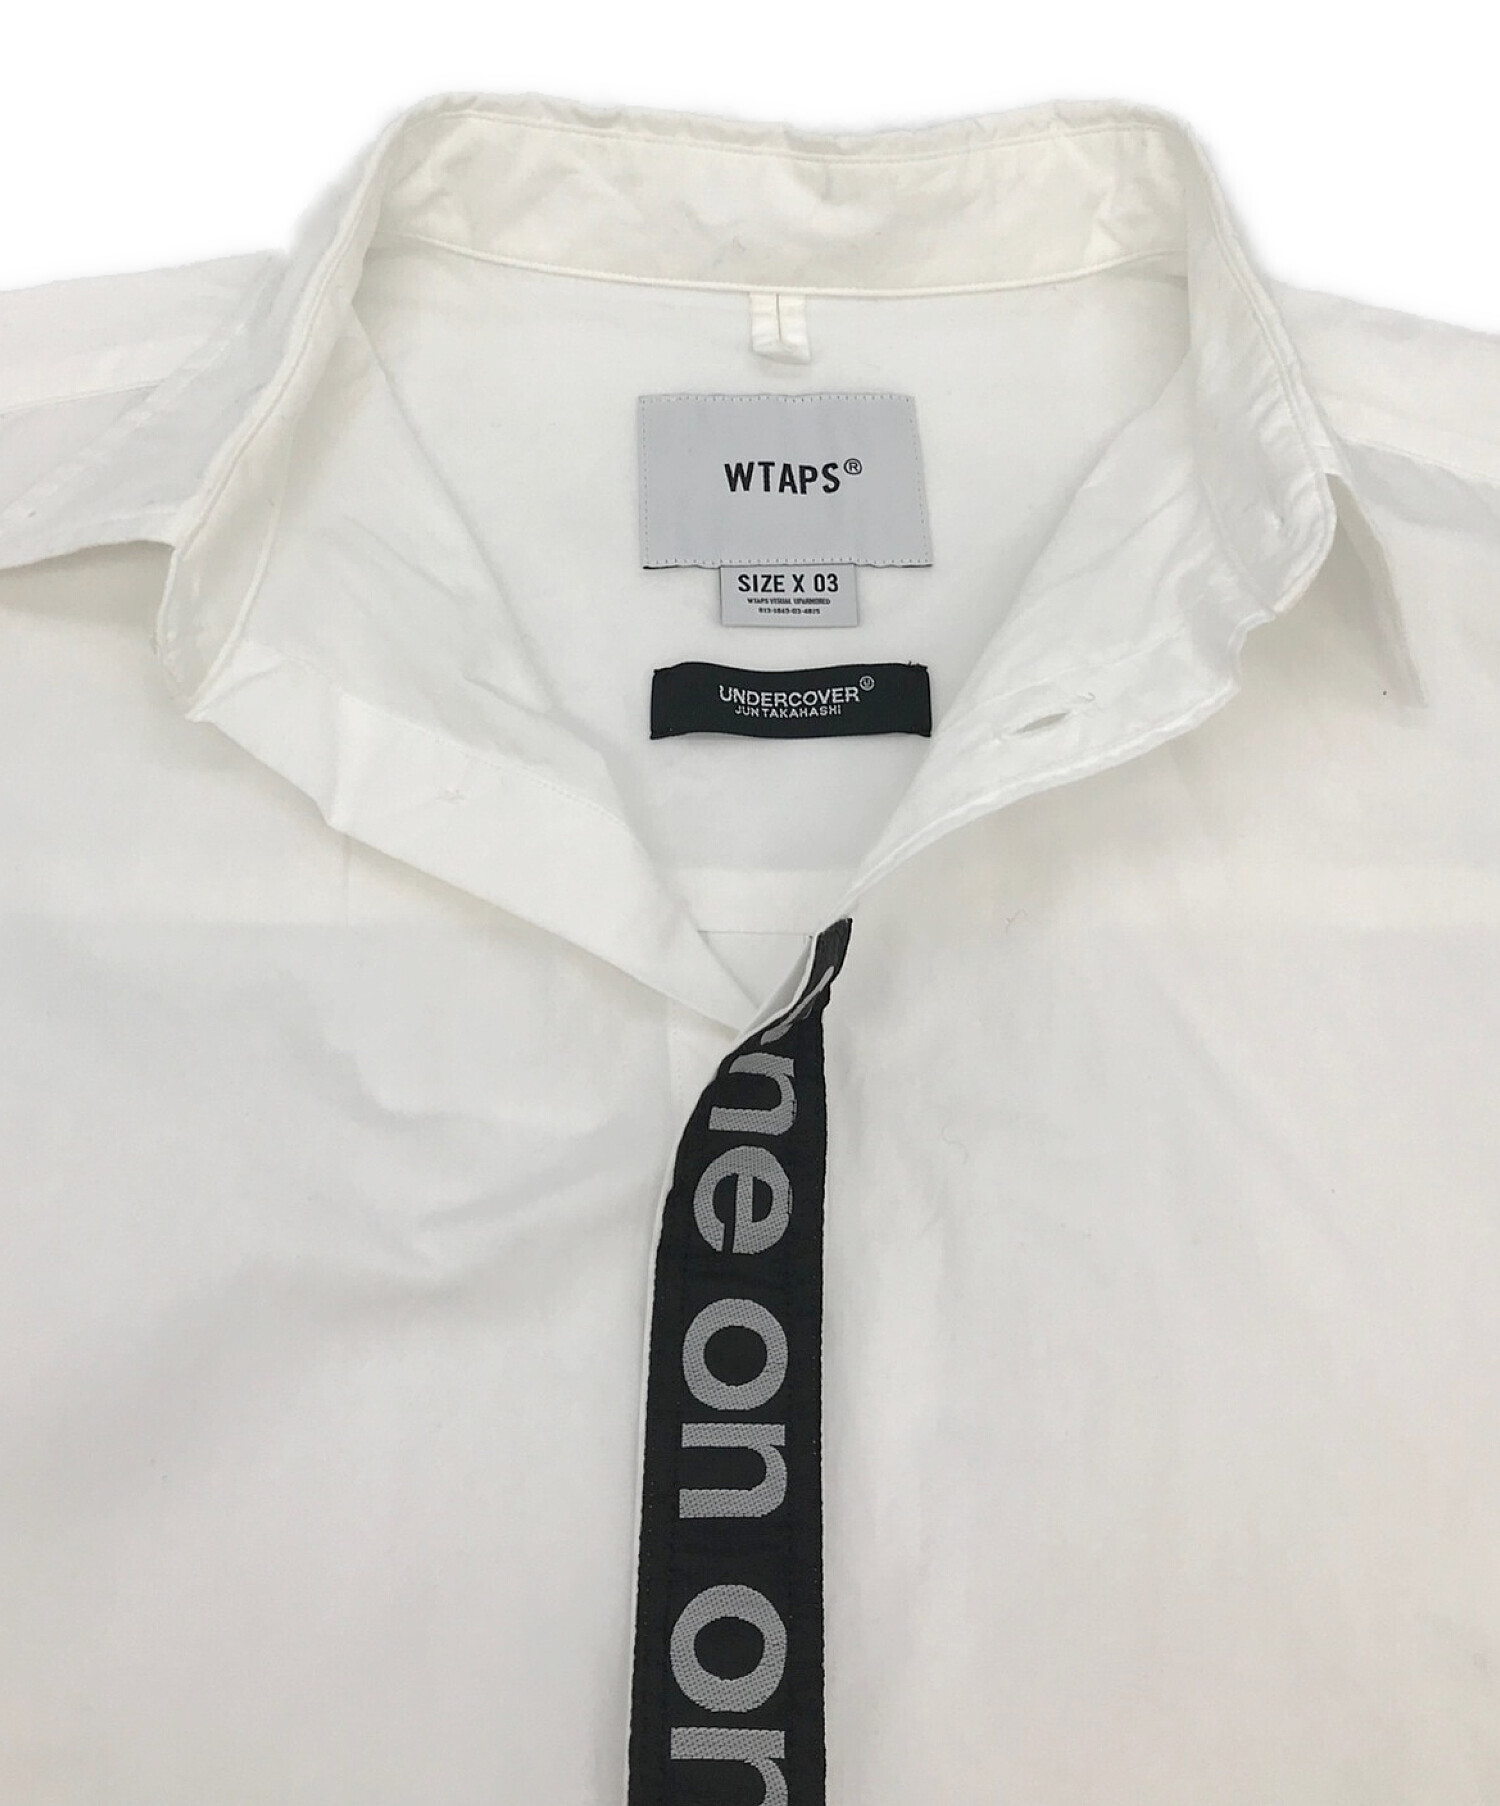 WTAPS×UNDERCOVER (ダブルタップス×アンダーカバー) コラボone on oneシャツ ホワイト サイズ:X 03